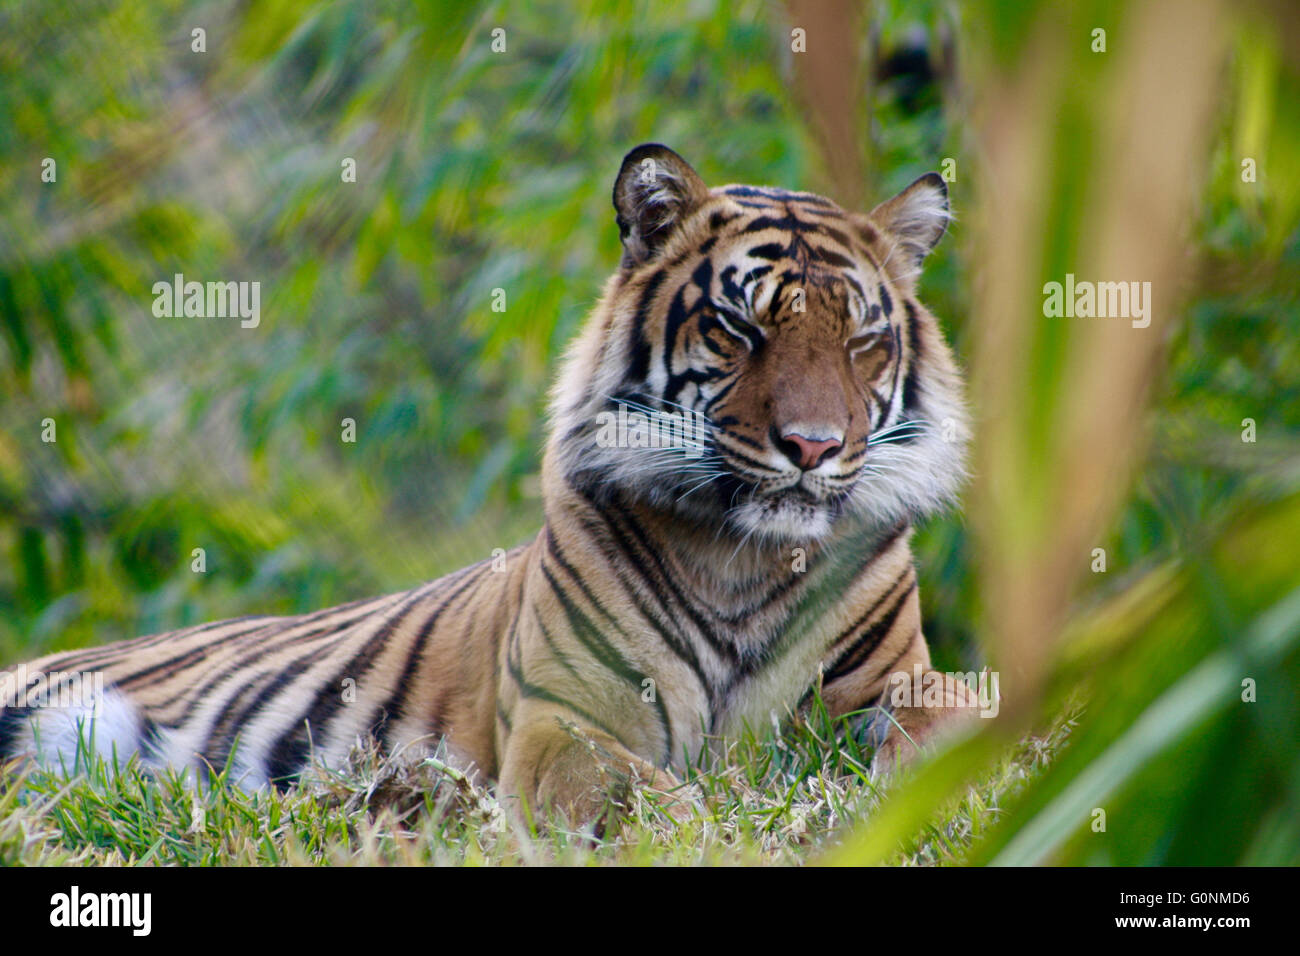 Endangered Sumatran Tiger Resting in Grass Stock Photo